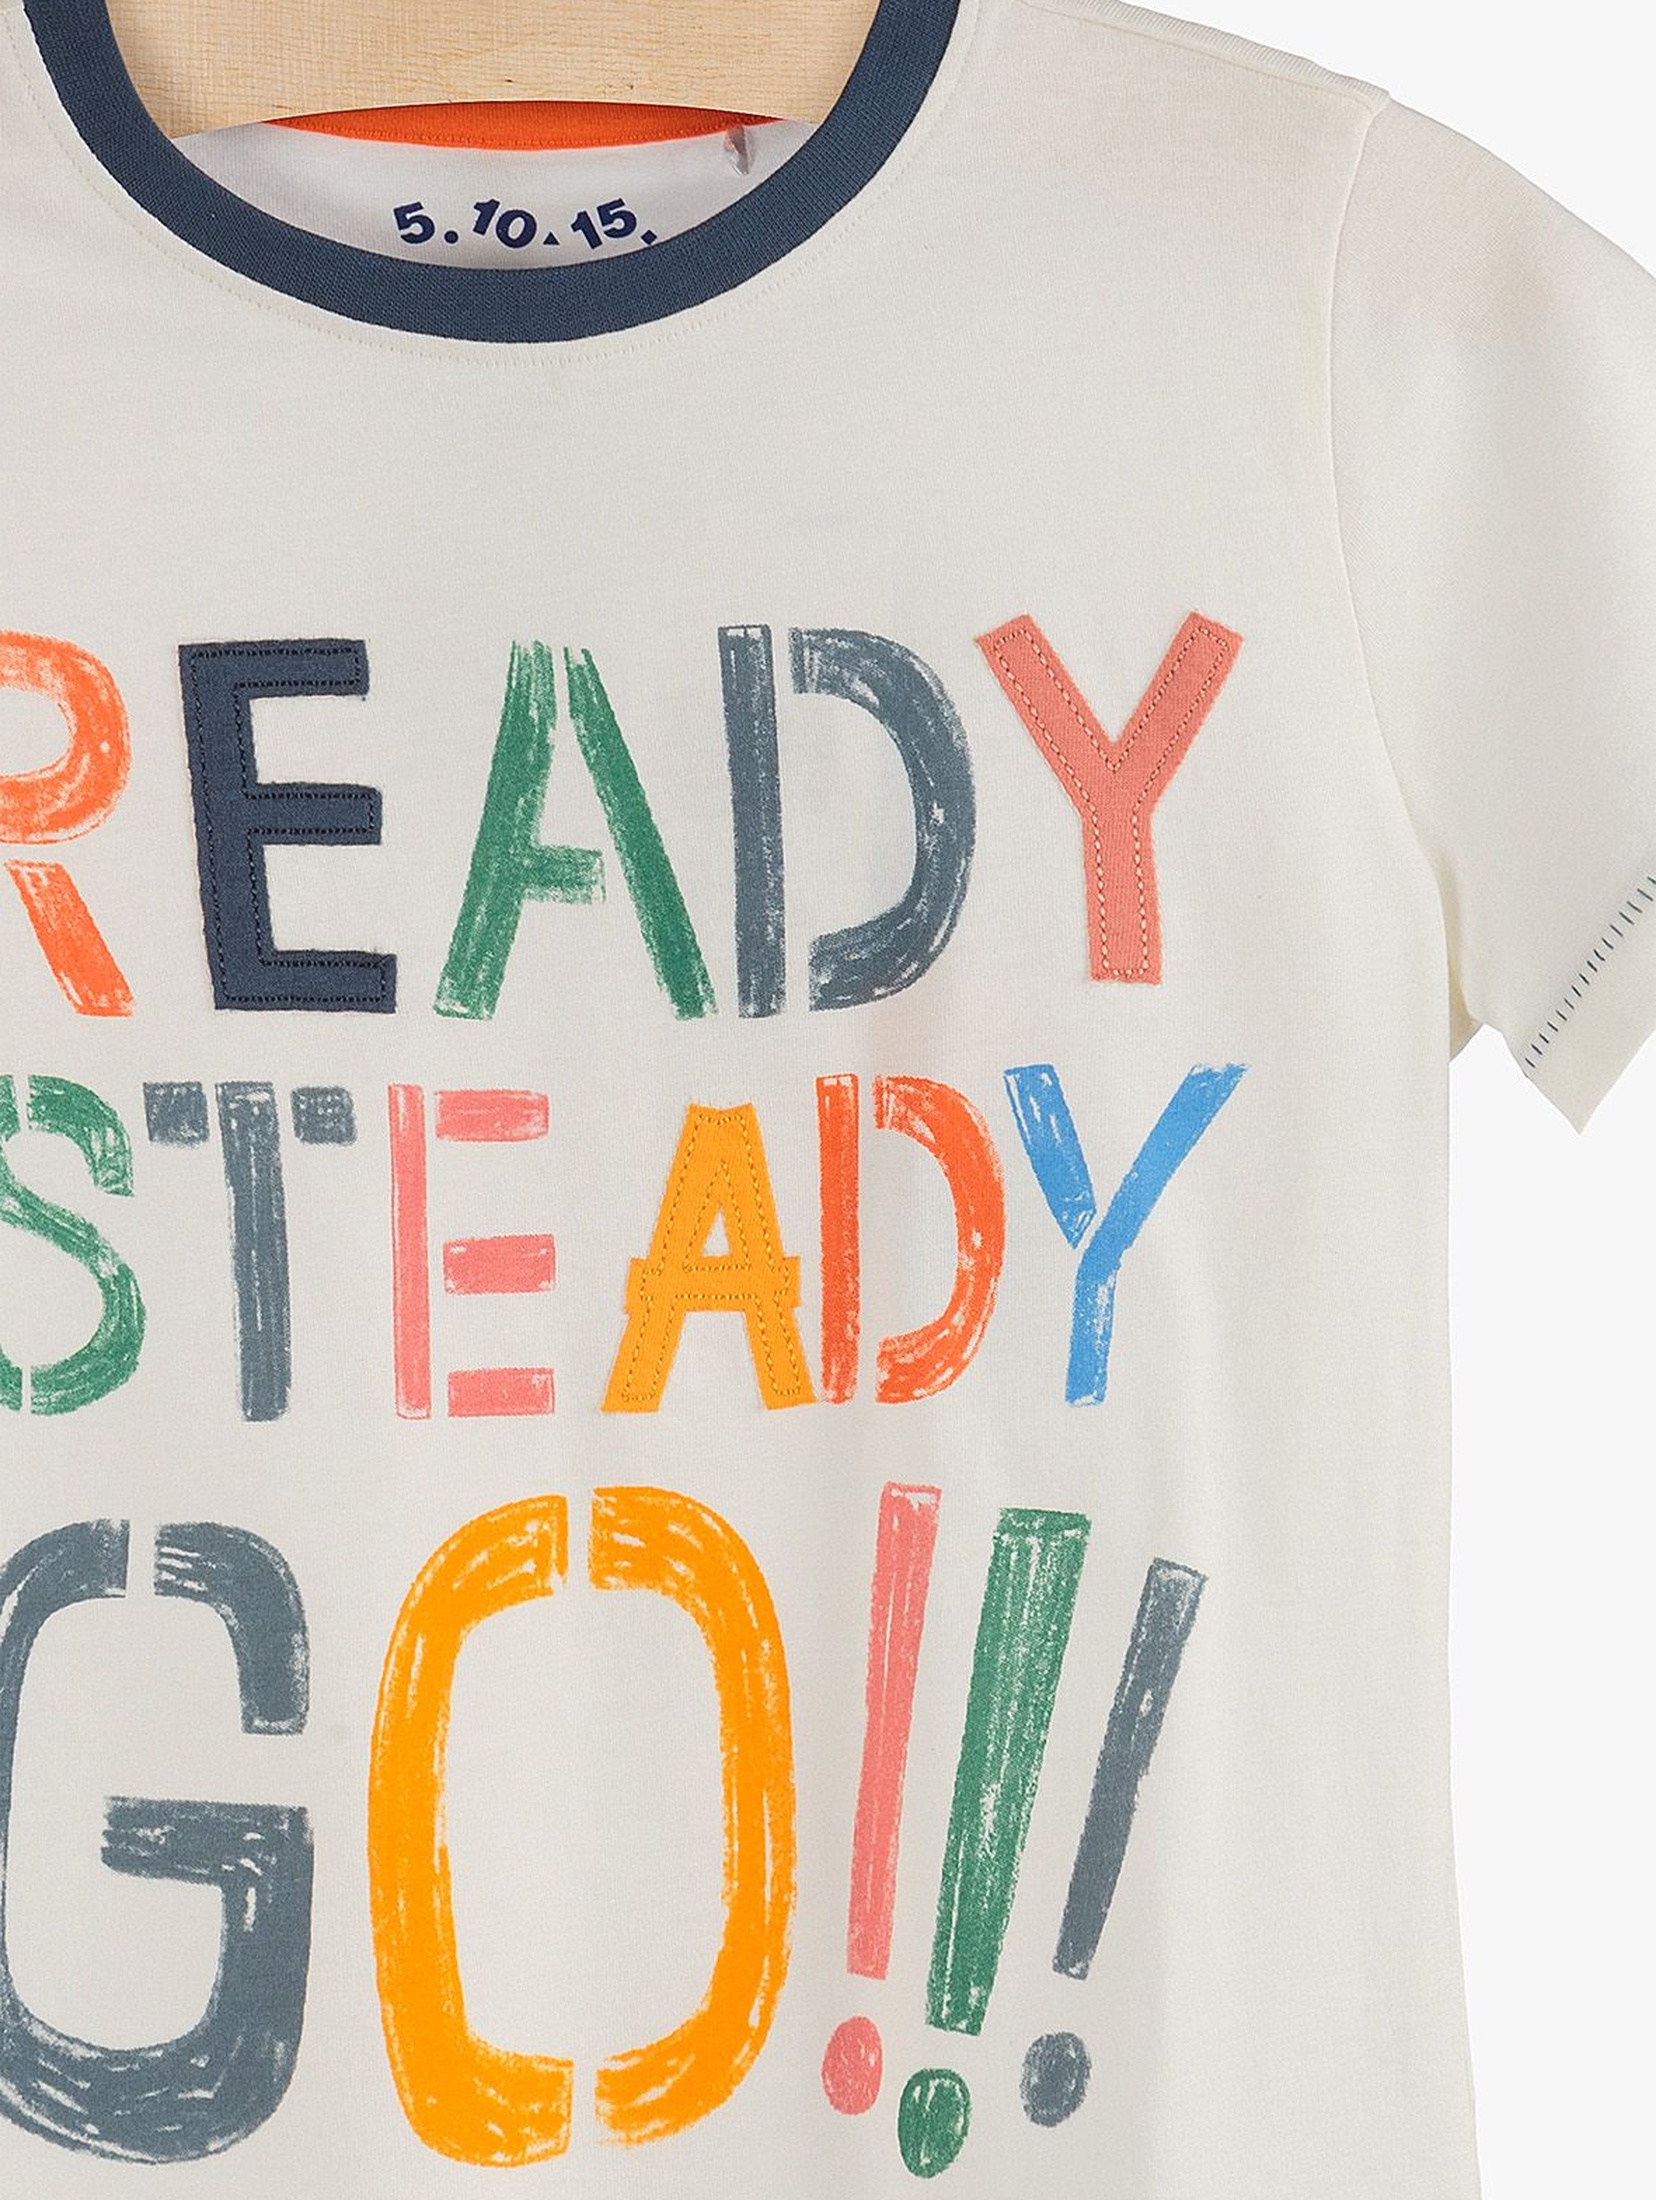 T-shirt chłopięcy z kolorowym napisem "Ready, steady, go!"